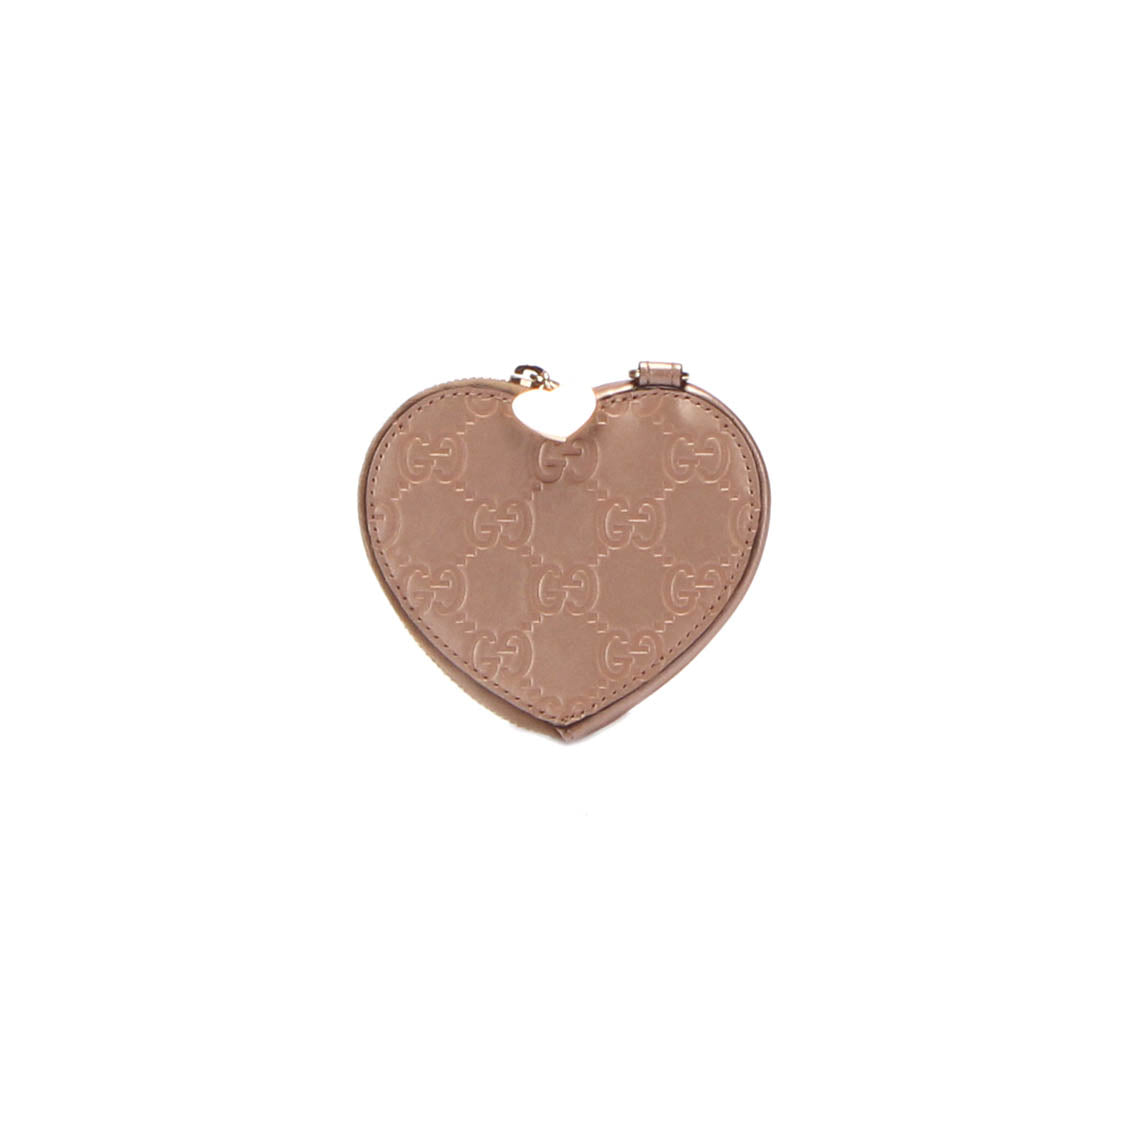 Guccissima Heart Coin Purse 152615